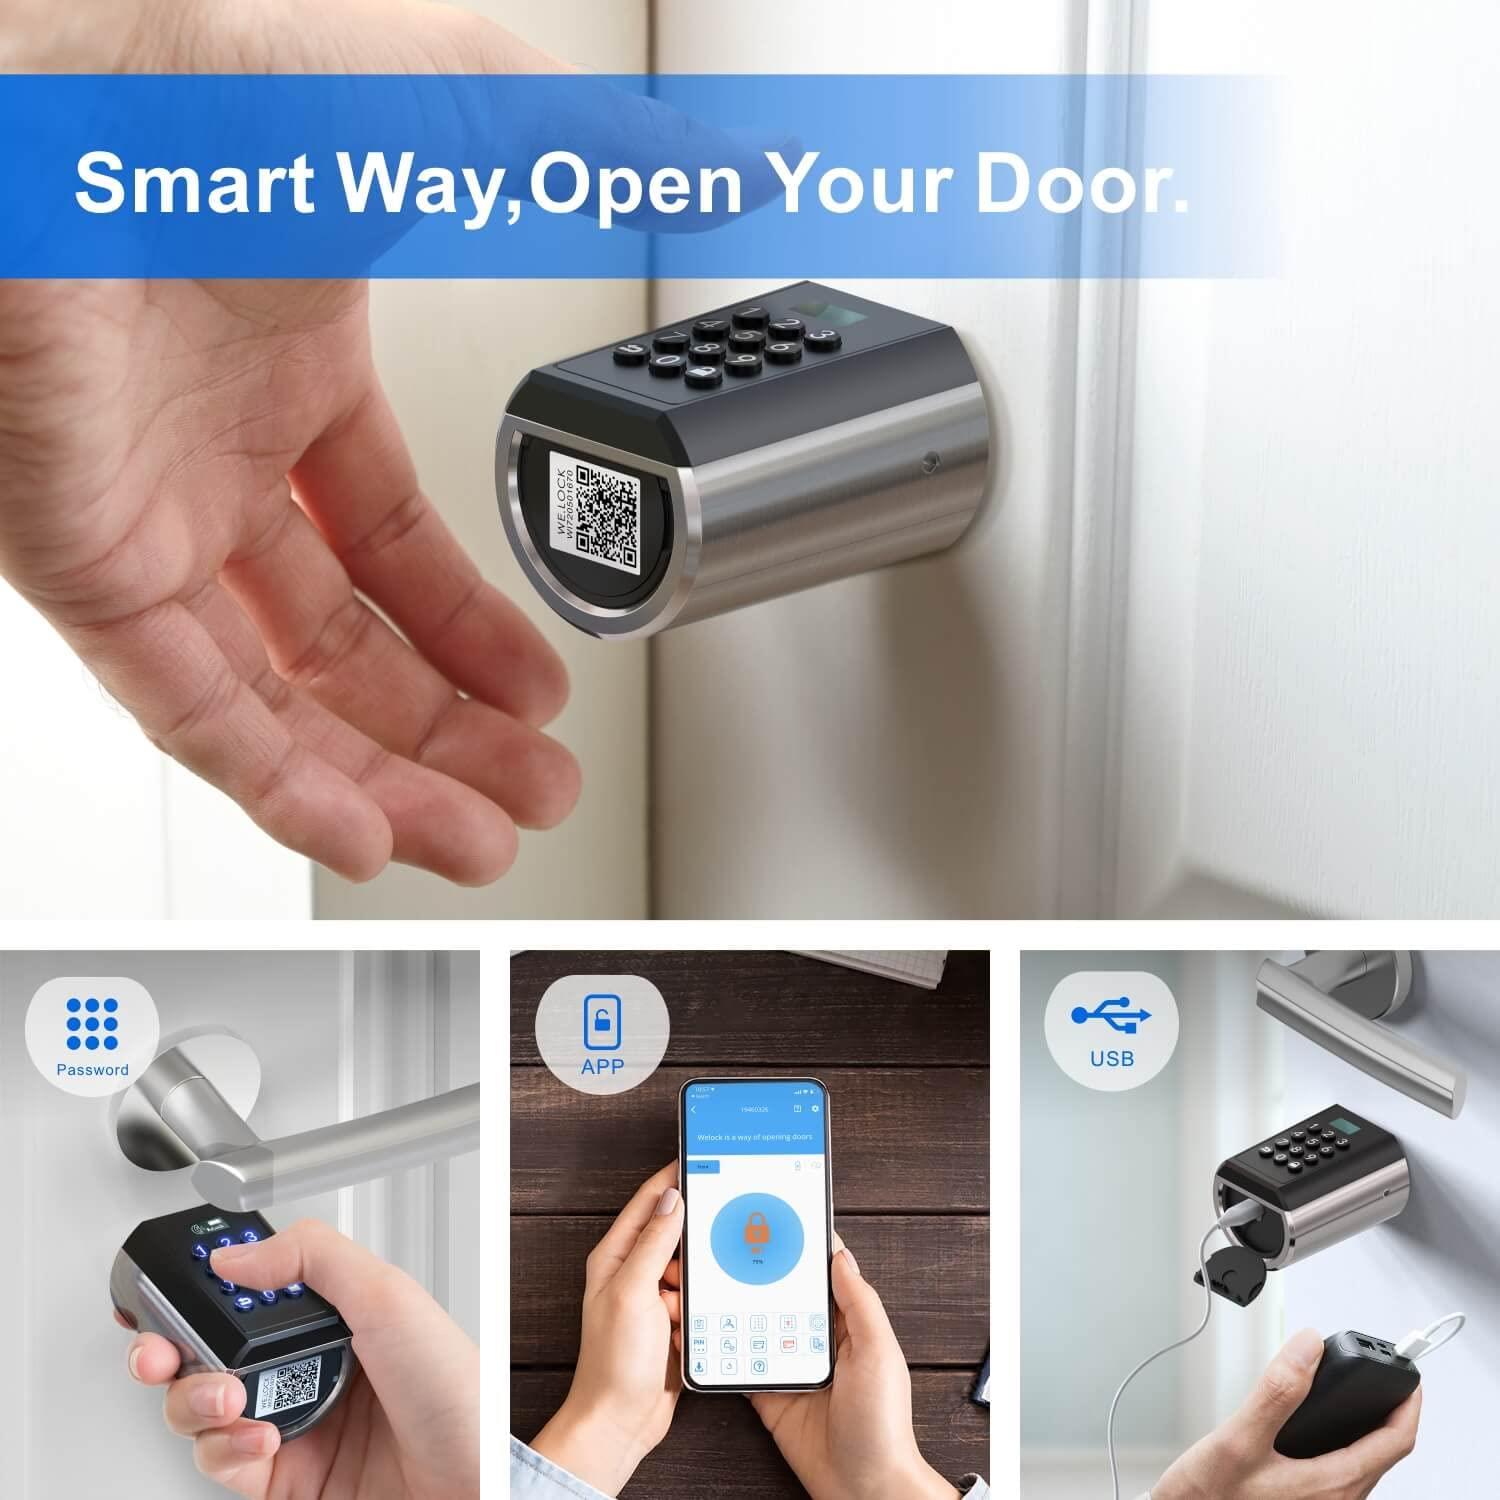 WELOCK PCB10EBL41 Electronic Smart Door Lock with Keypad, IP65 Waterproof, 10 Password Capacity, App Control